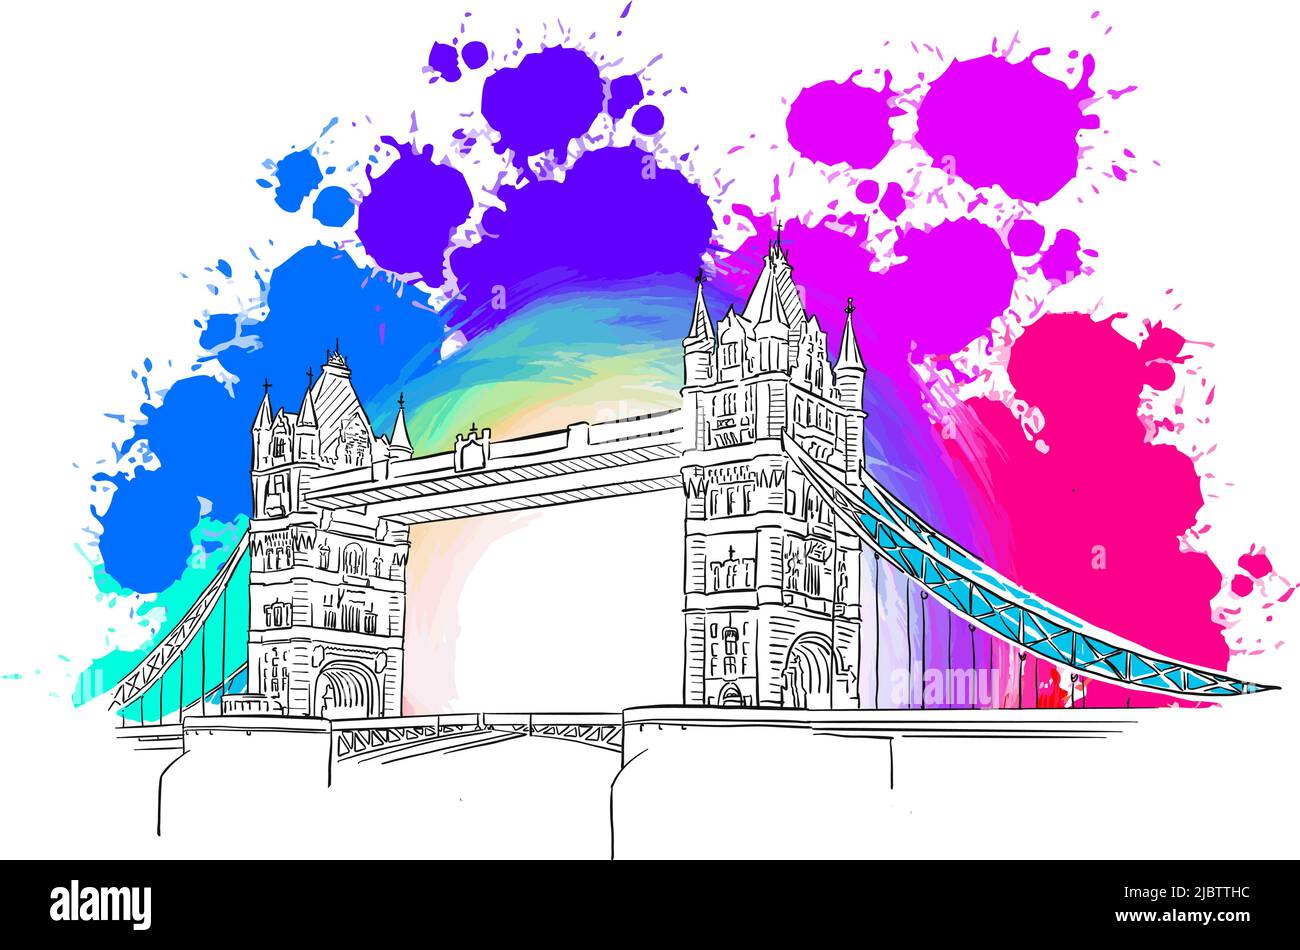 Zeichnung Der London Bridge. Echtes Zeichnen von Hand. Farbenfrohes Vektorzeichen. Stock Vektor